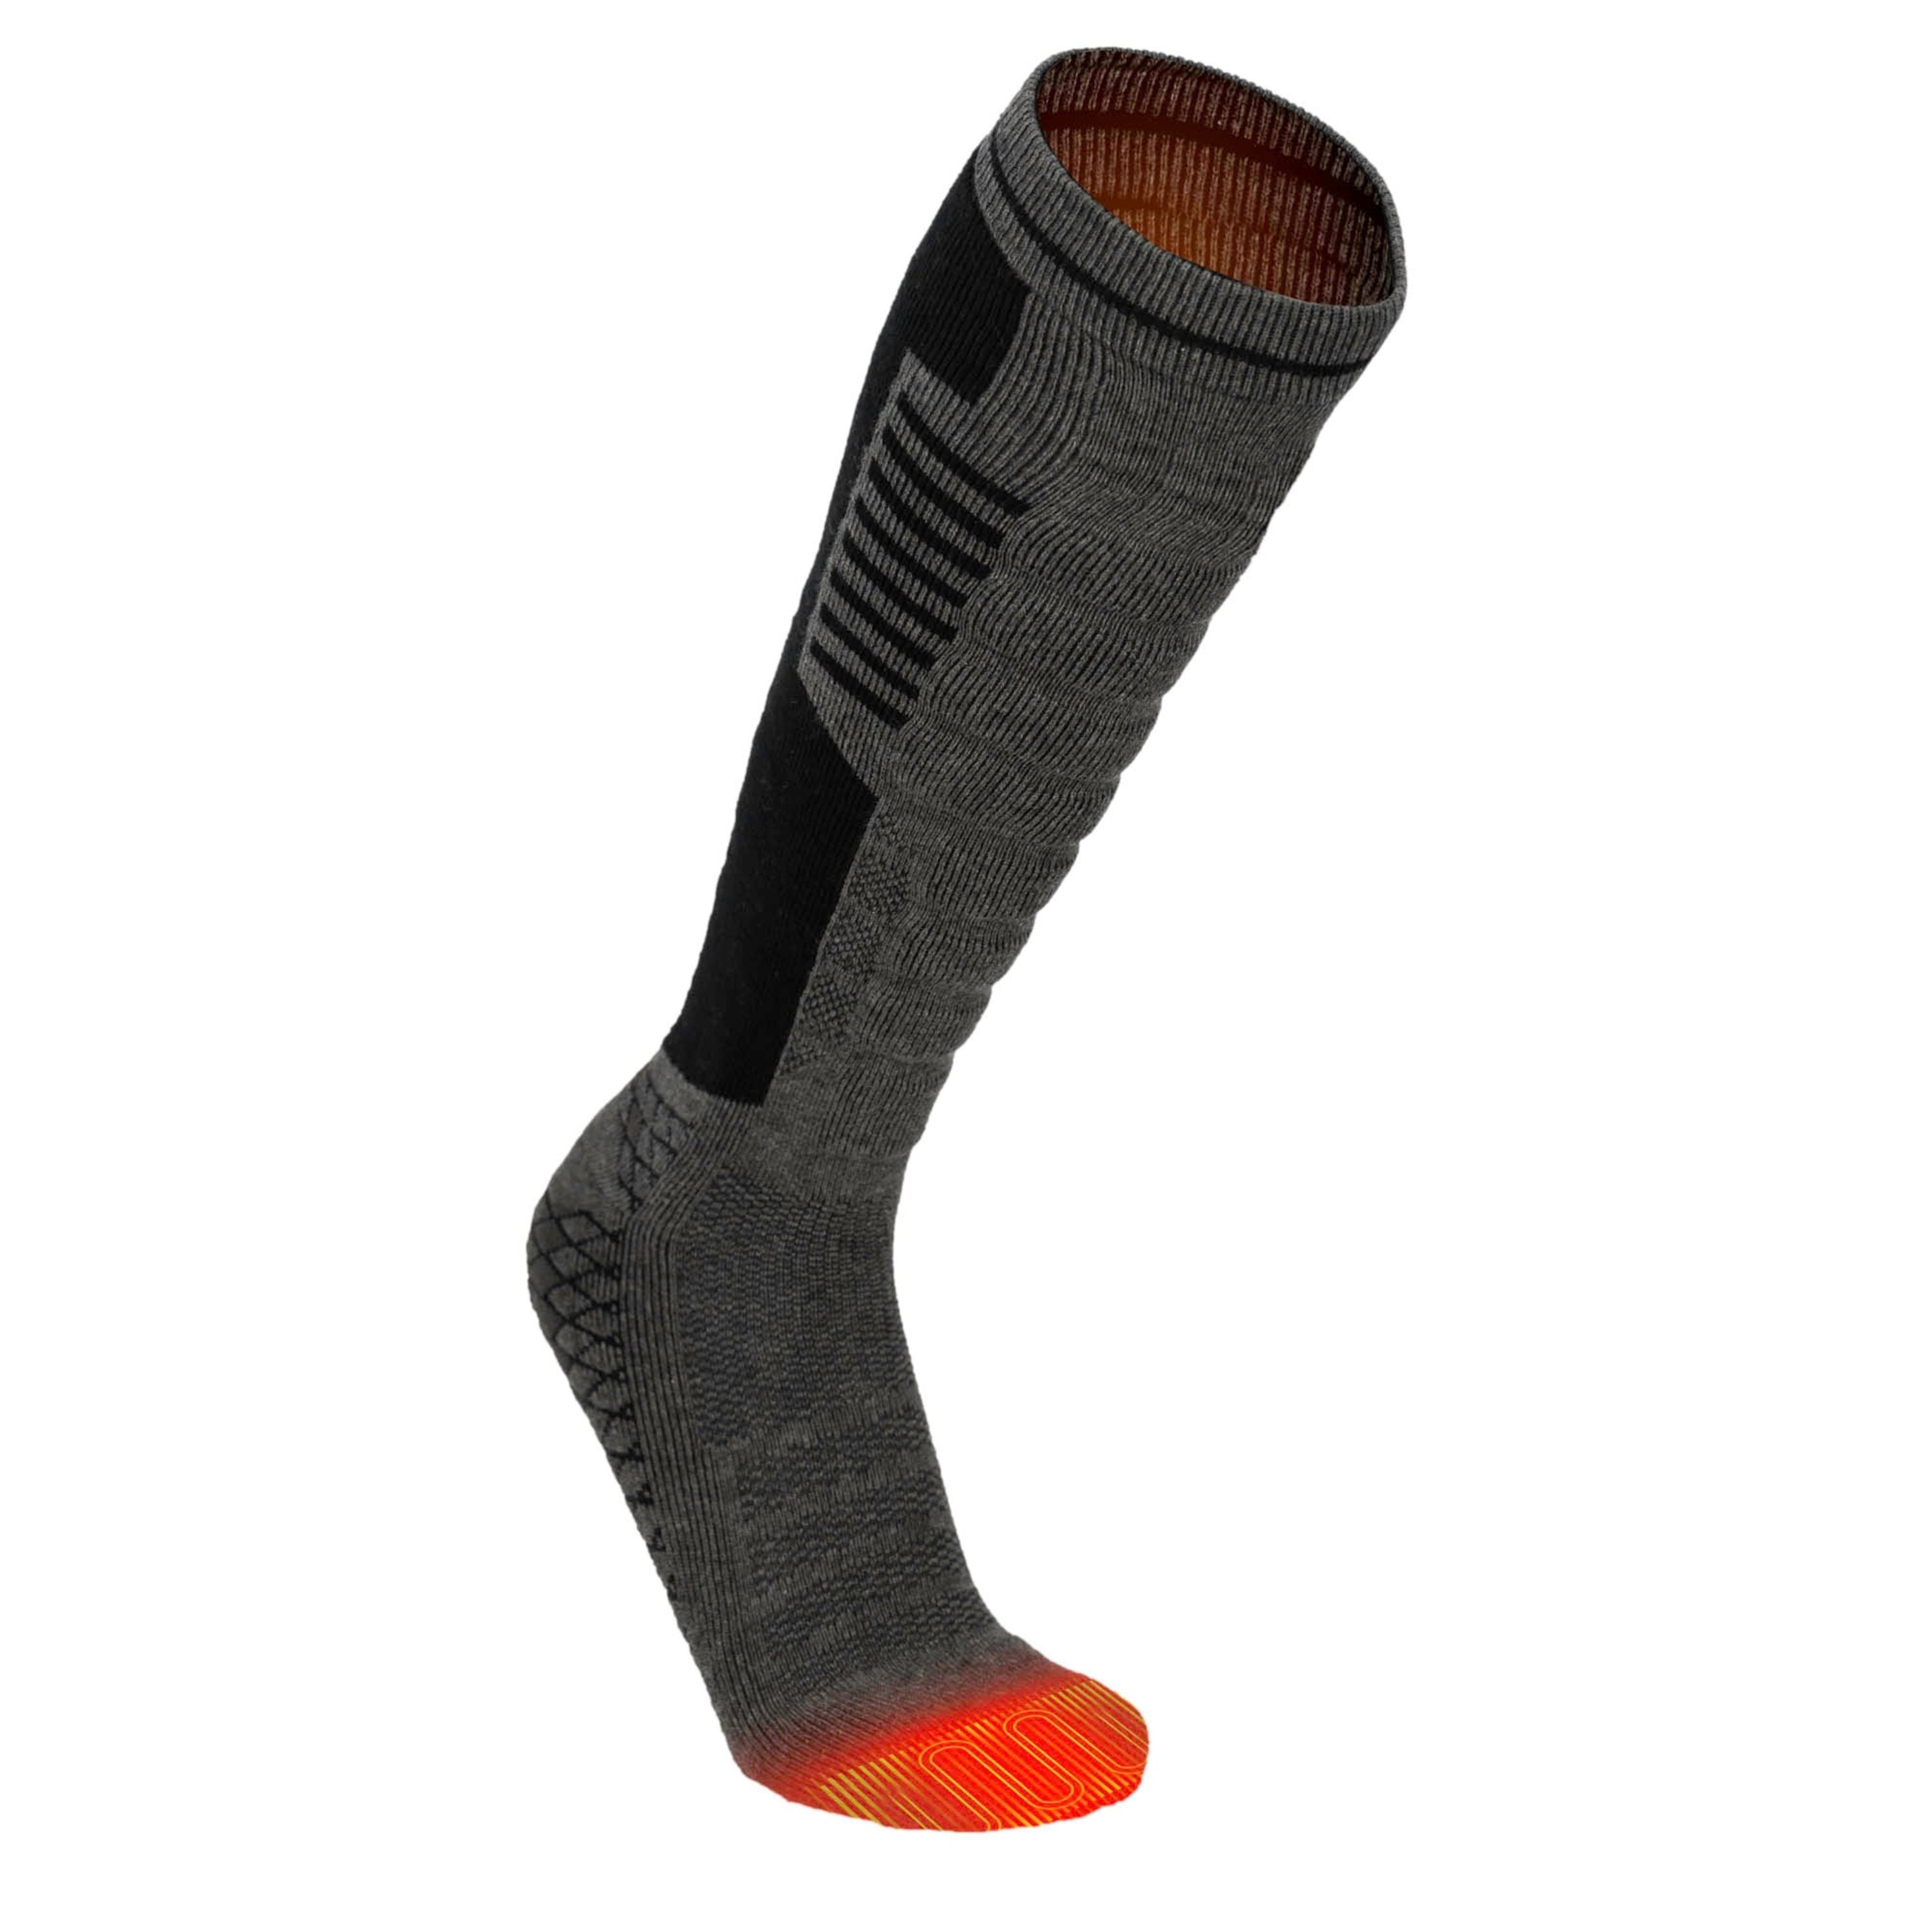 Thermal heated socks - Unisex